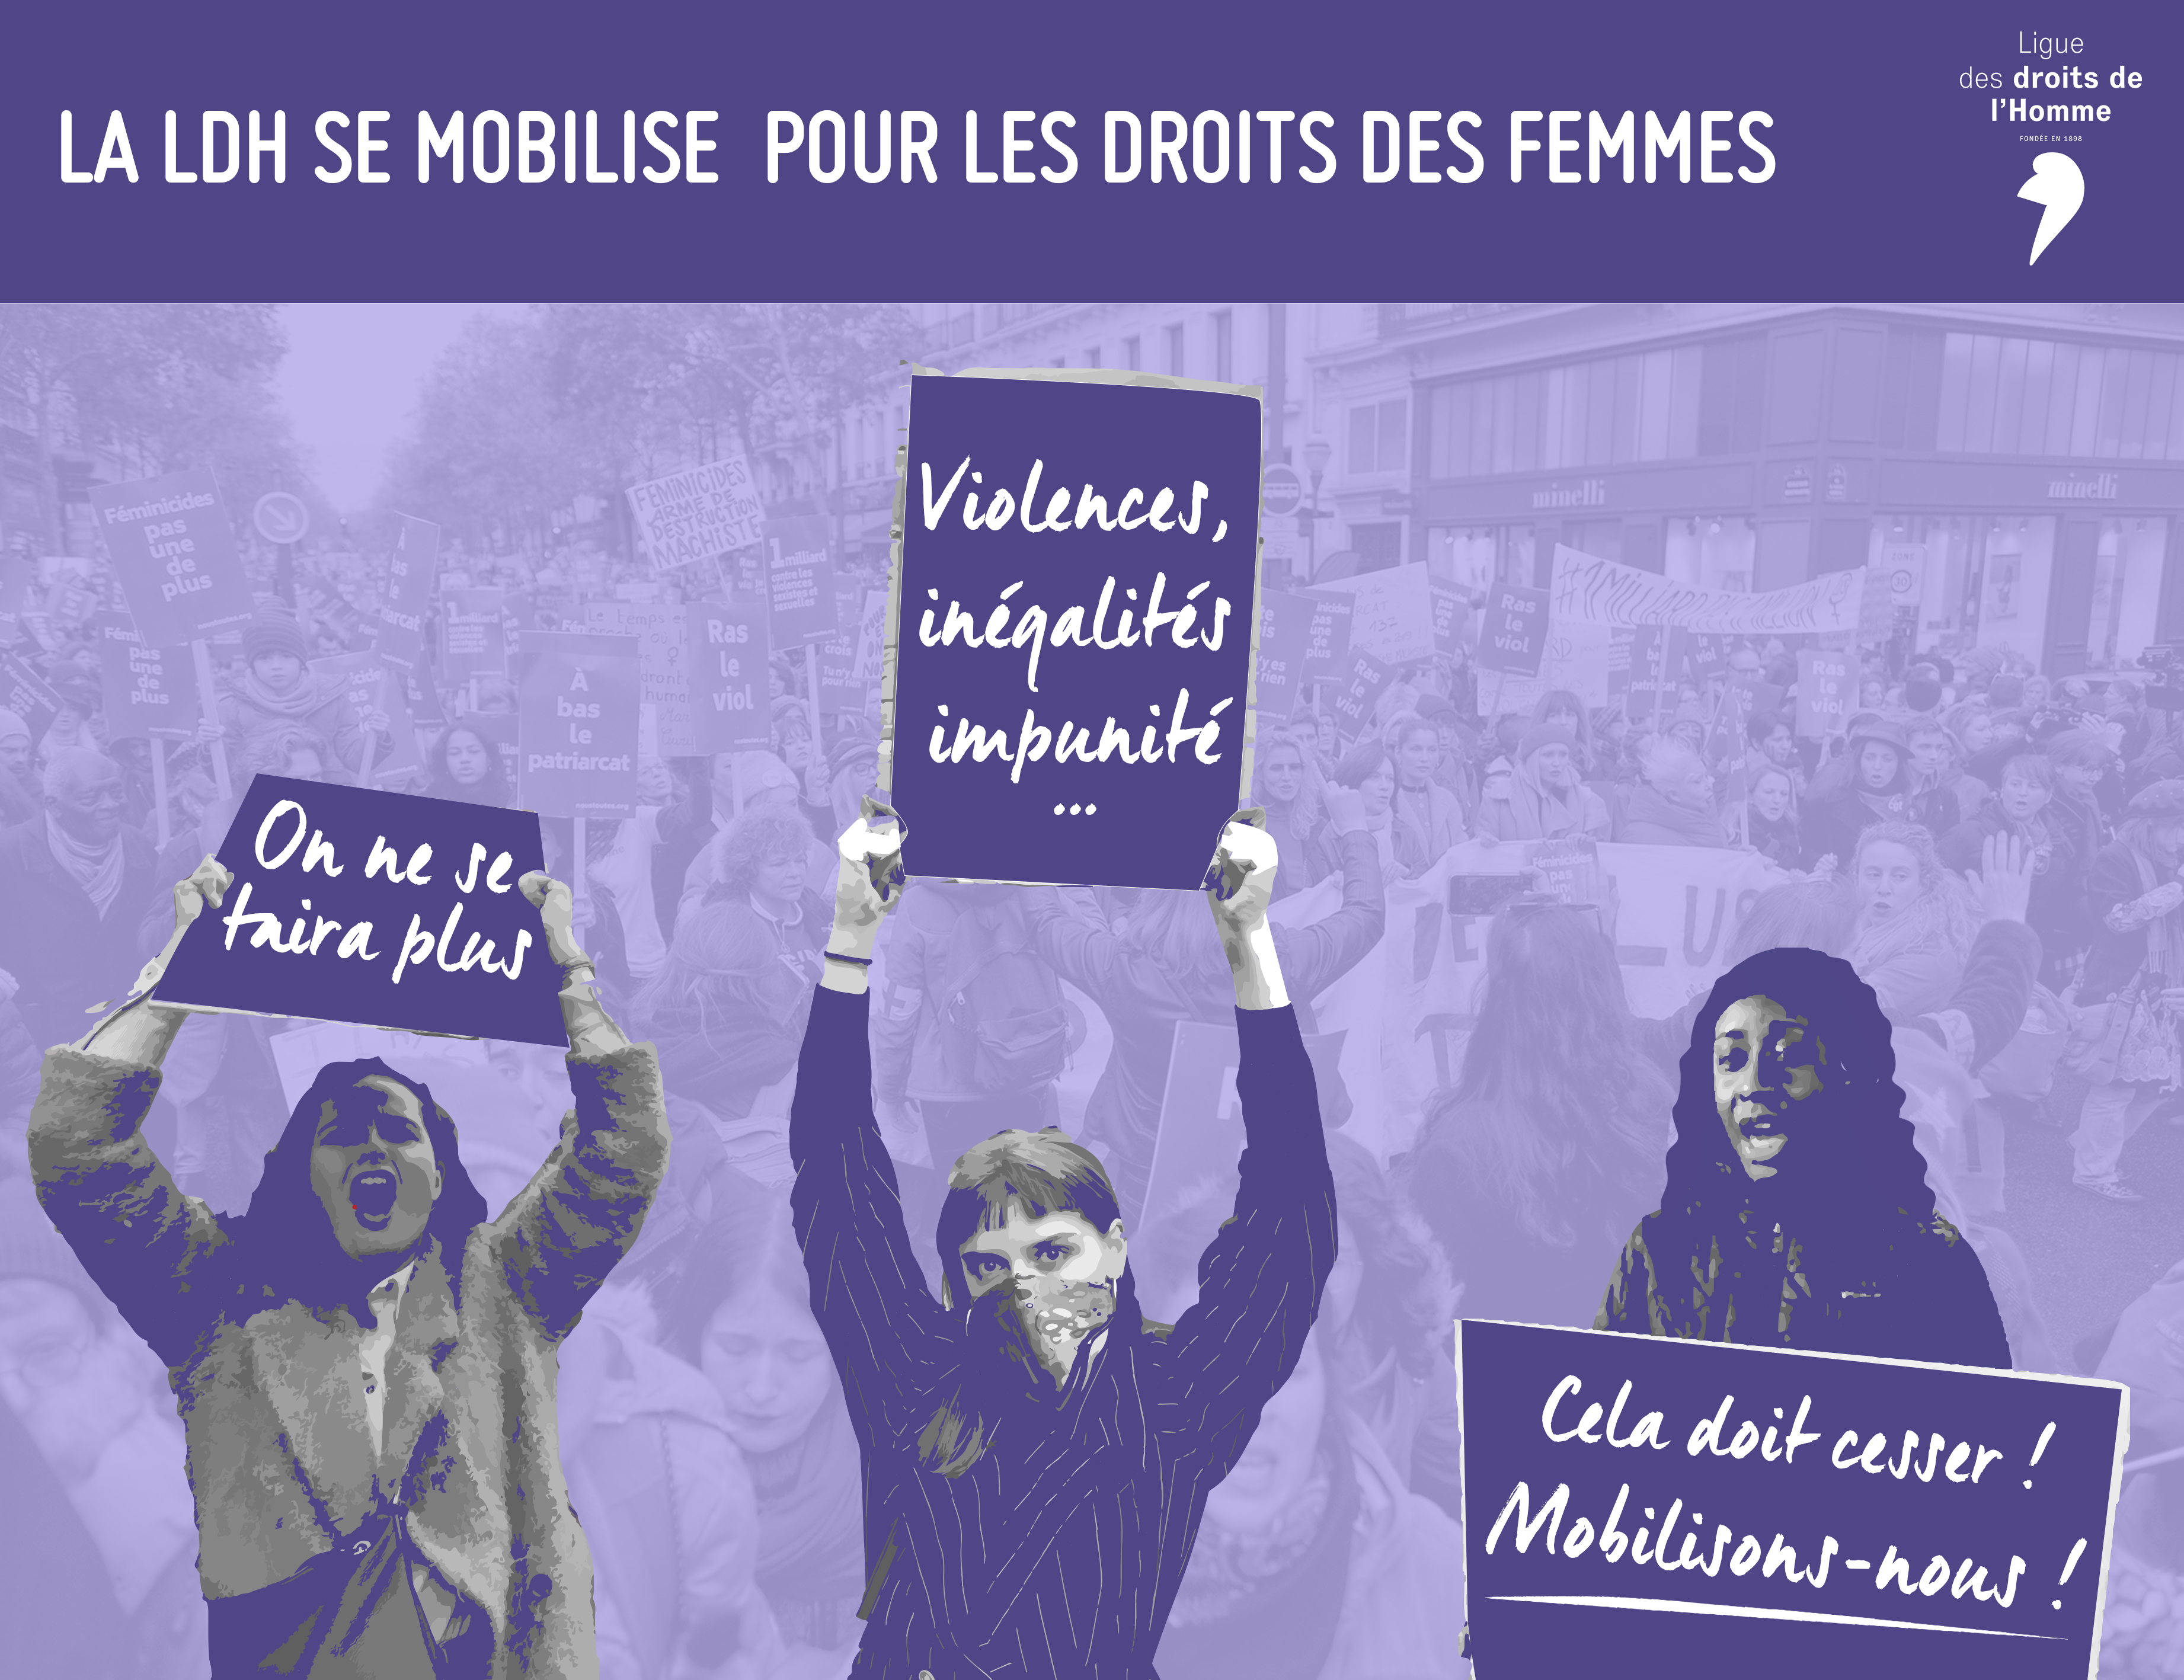 Journée internationale de lutte pour les droits des femmes